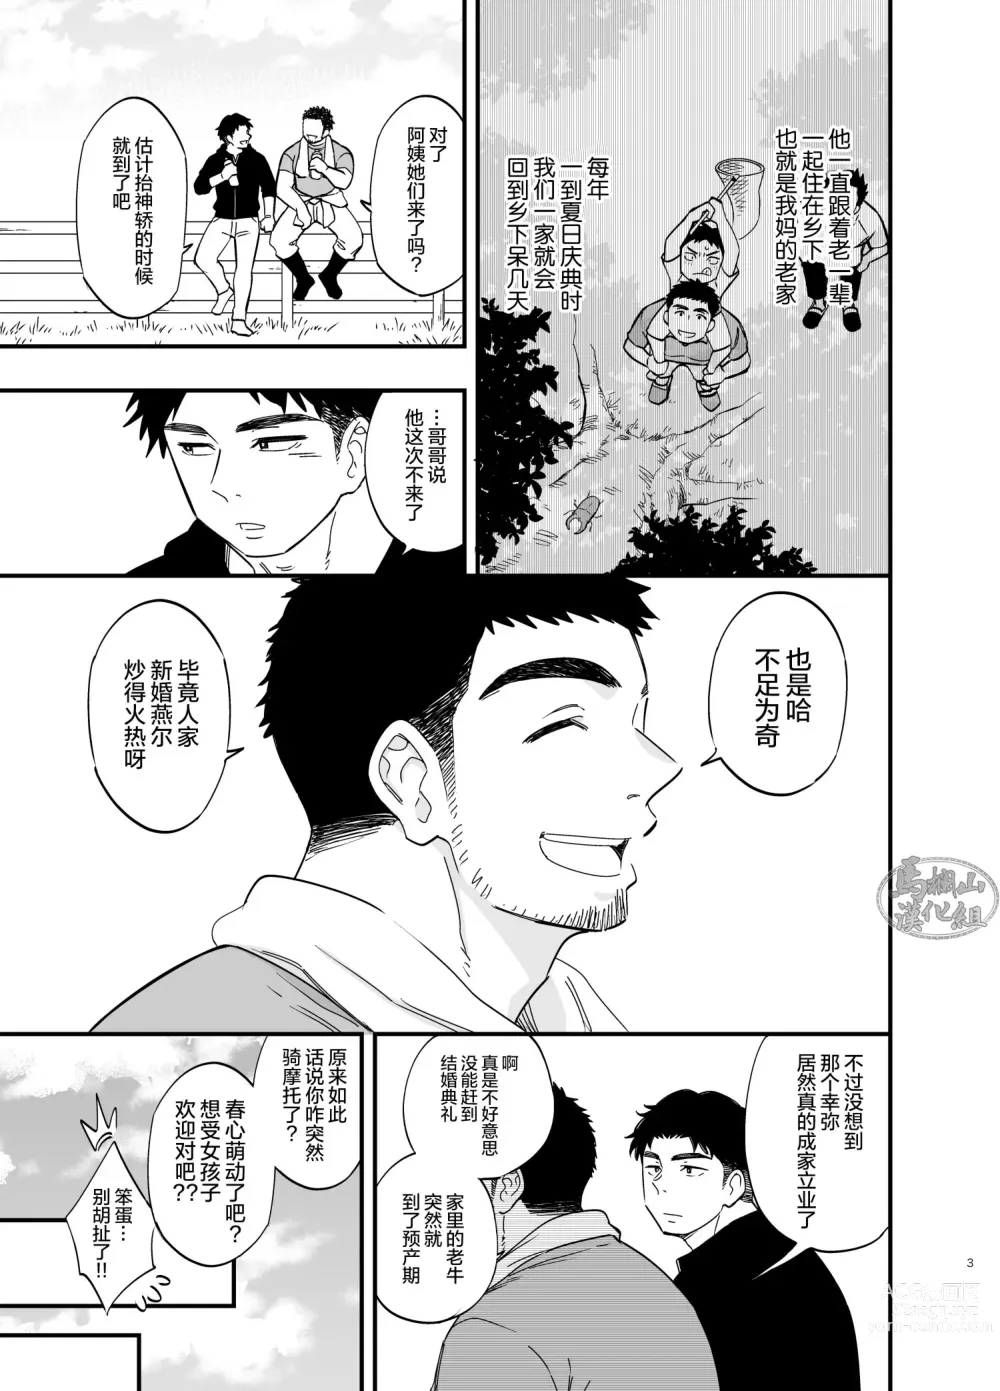 Page 4 of manga 穴